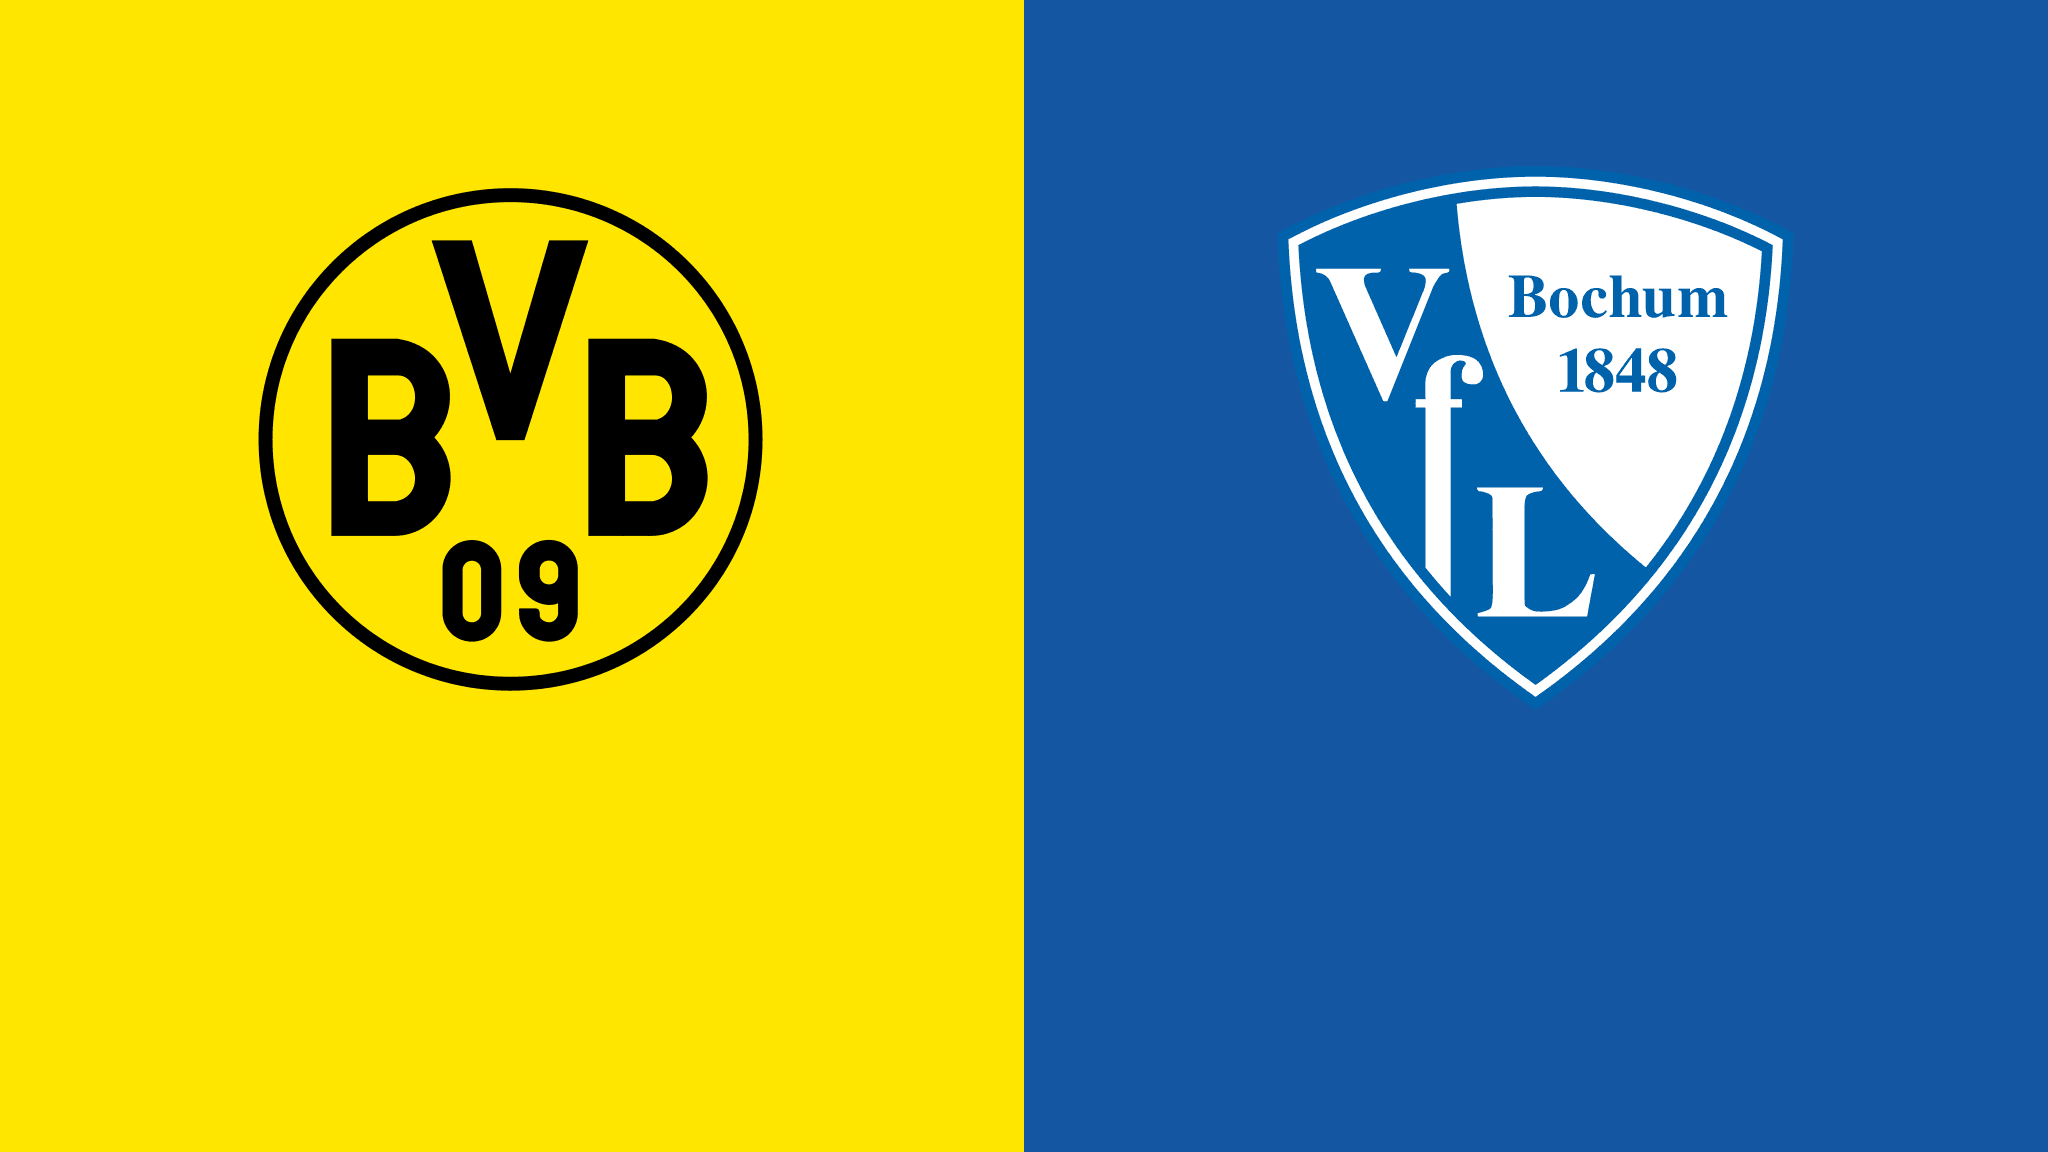  مشاهدة مباراة بوروسيا دورتموند و بوخوم بث مباشر 05/11/2022 Borussia Dortmund vs Bochum